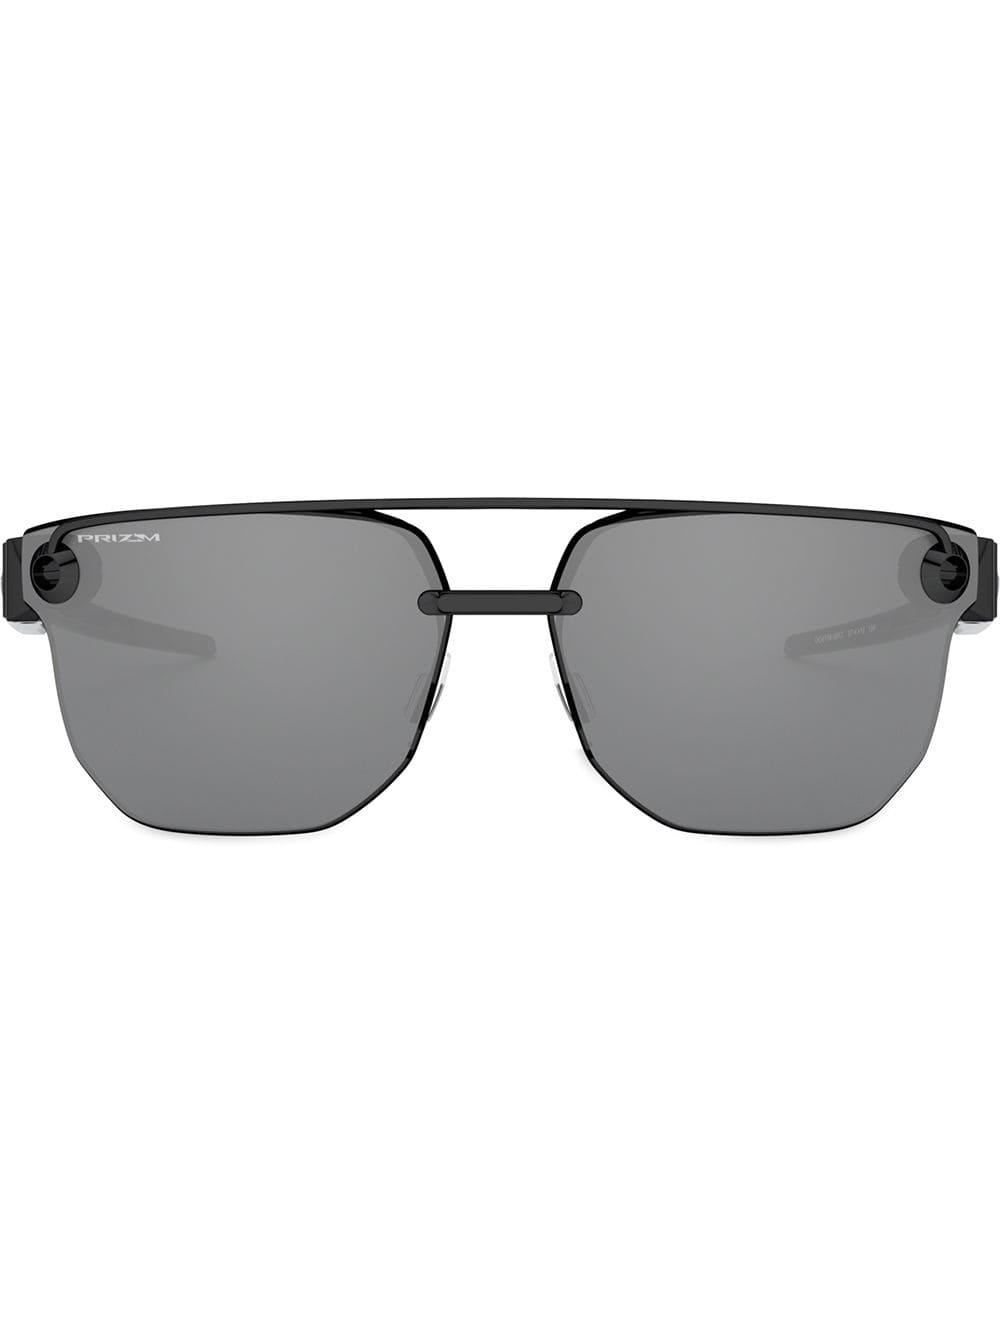 Oakley Chrystl Sunglasses in Black - Lyst